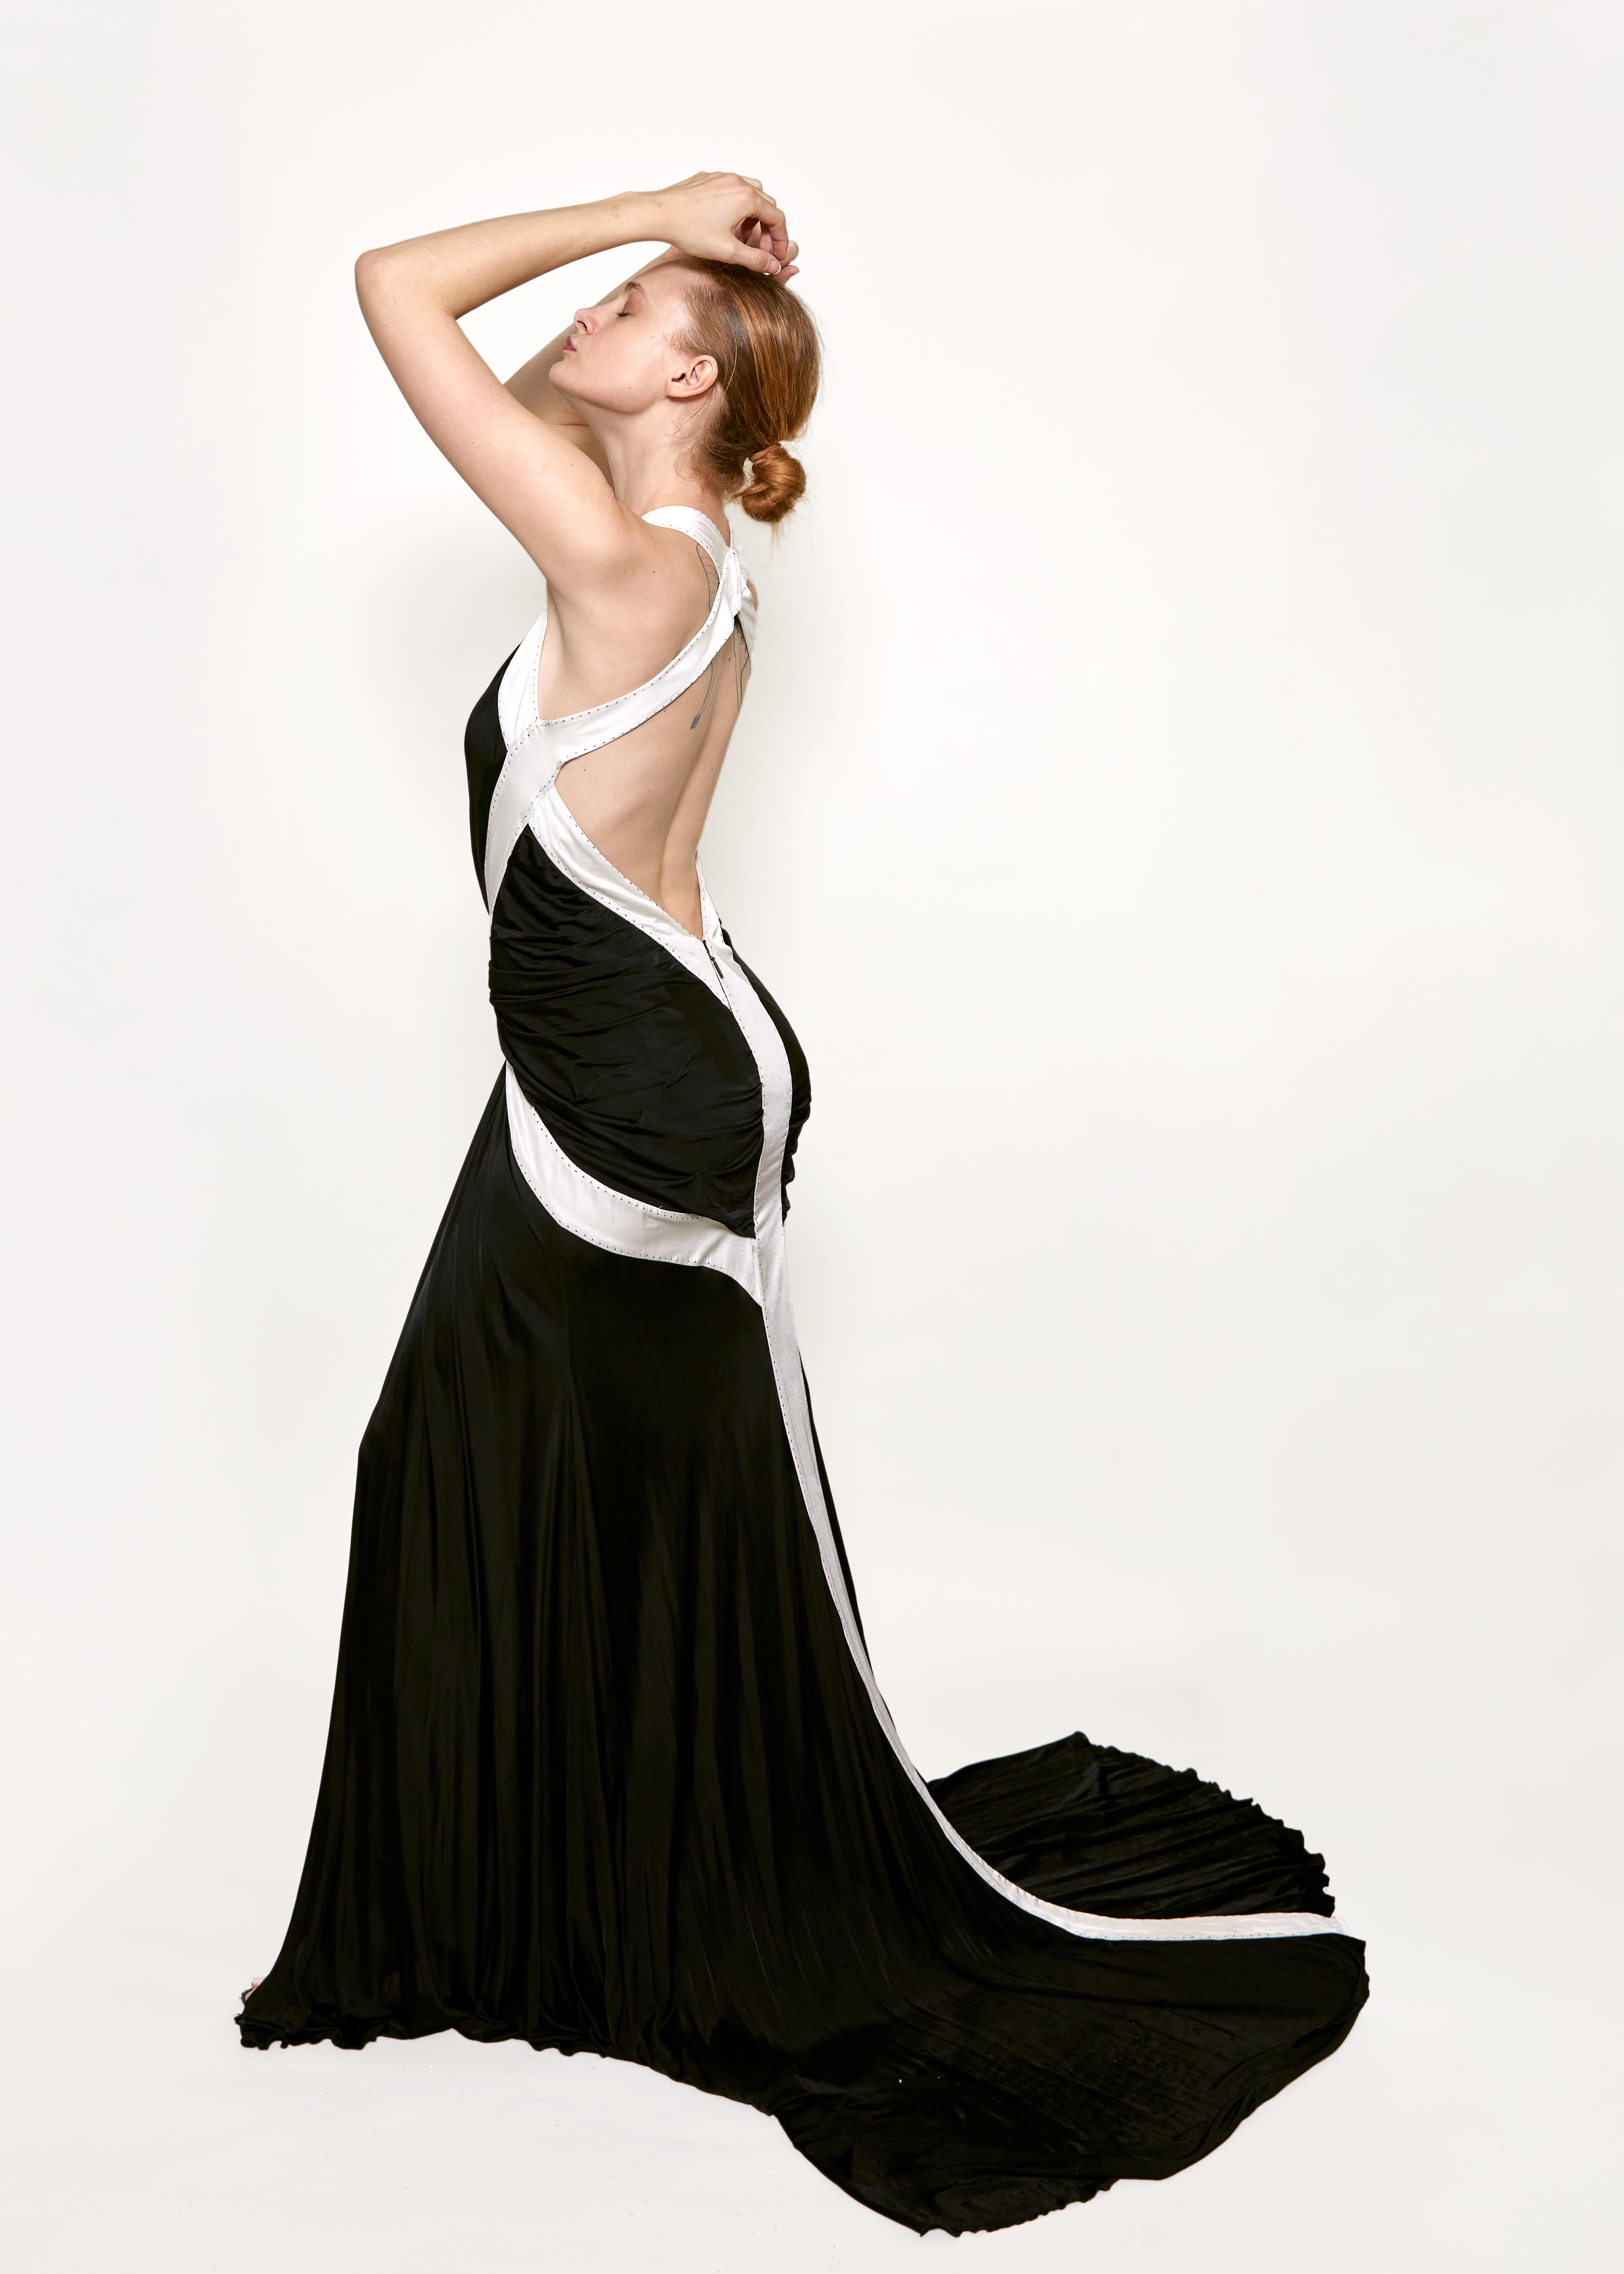 Schwelgen Sie in purer Eleganz mit dem schwarz/weißen Abendkleid 2008 von Roberto Cavalli mit tiefem Rücken. Dieses raffinierte Kleid mit tiefem V-Ausschnitt und geometrischem Farbblockmuster sorgt für einen atemberaubenden und exklusiven Look. Der